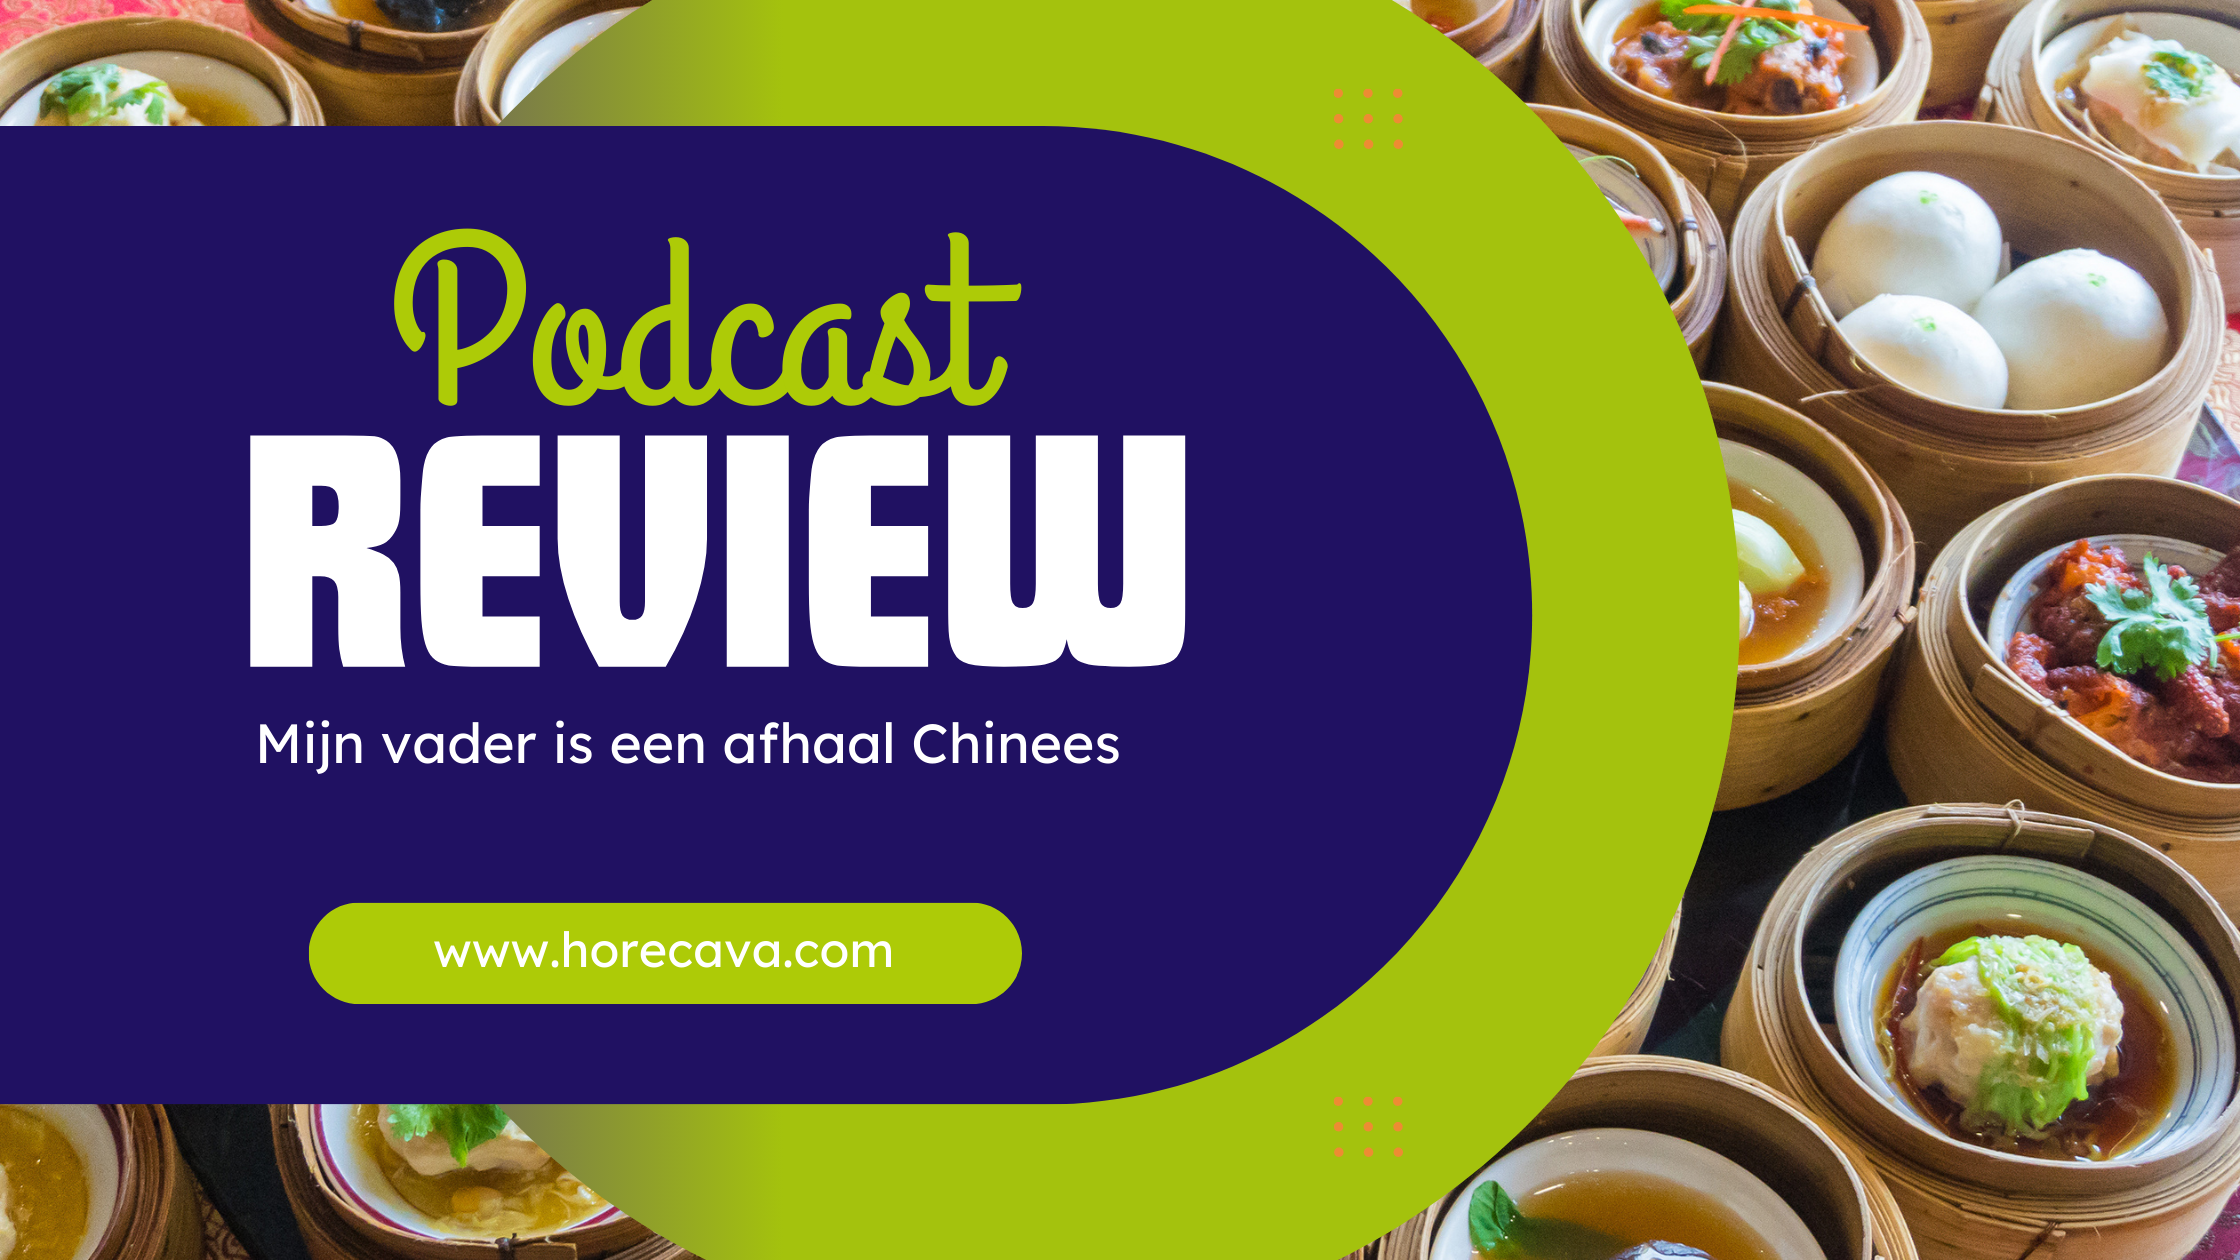 Podcast "Mijn vader is een afhaal Chinees"